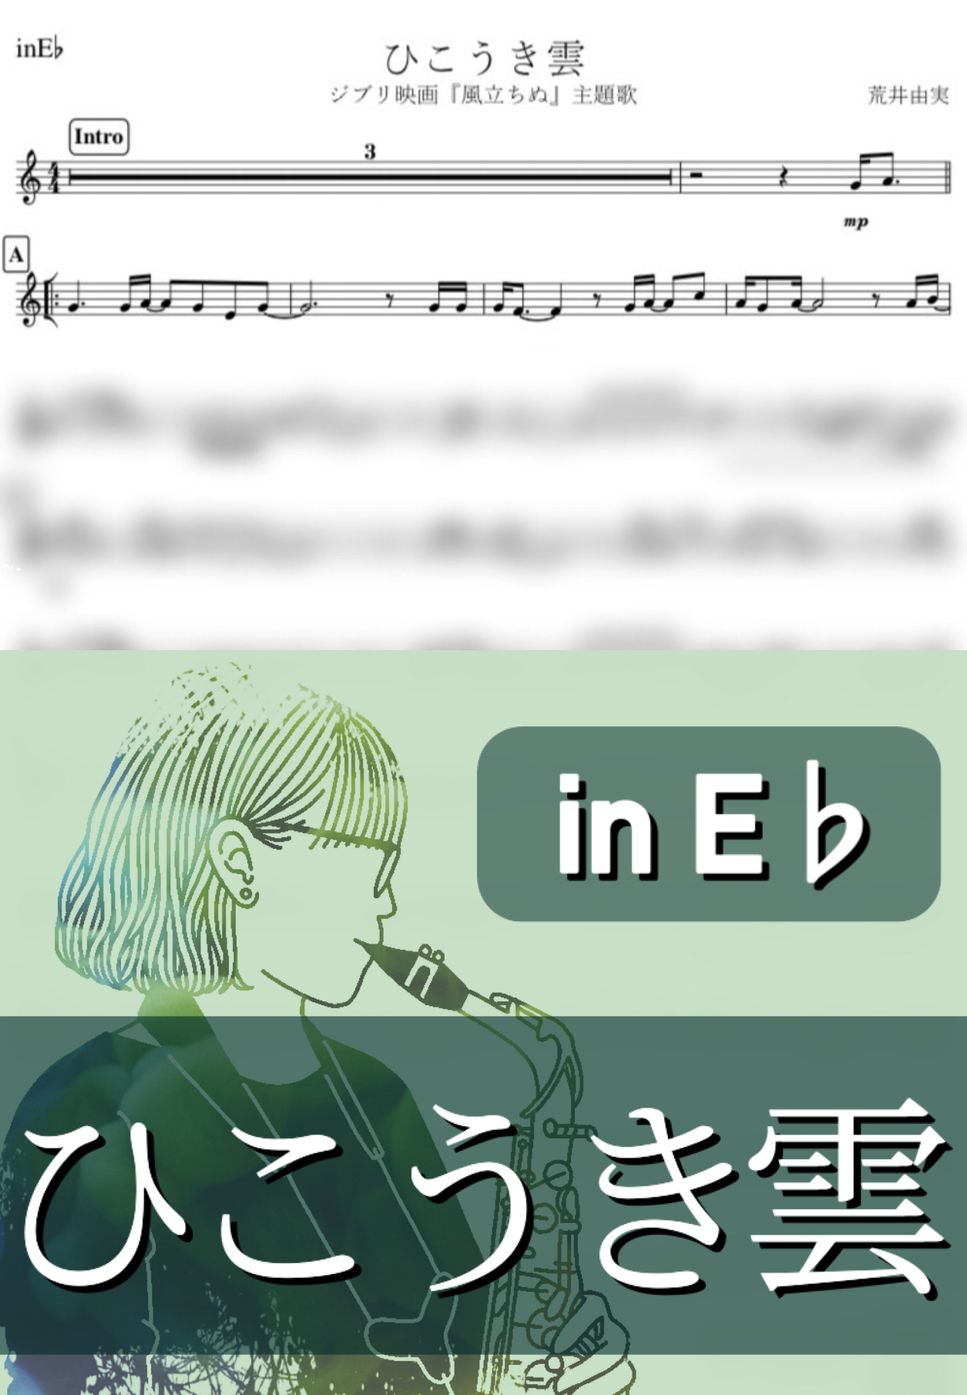 荒井由実 - ひこうき雲 (E♭) by kanamusic